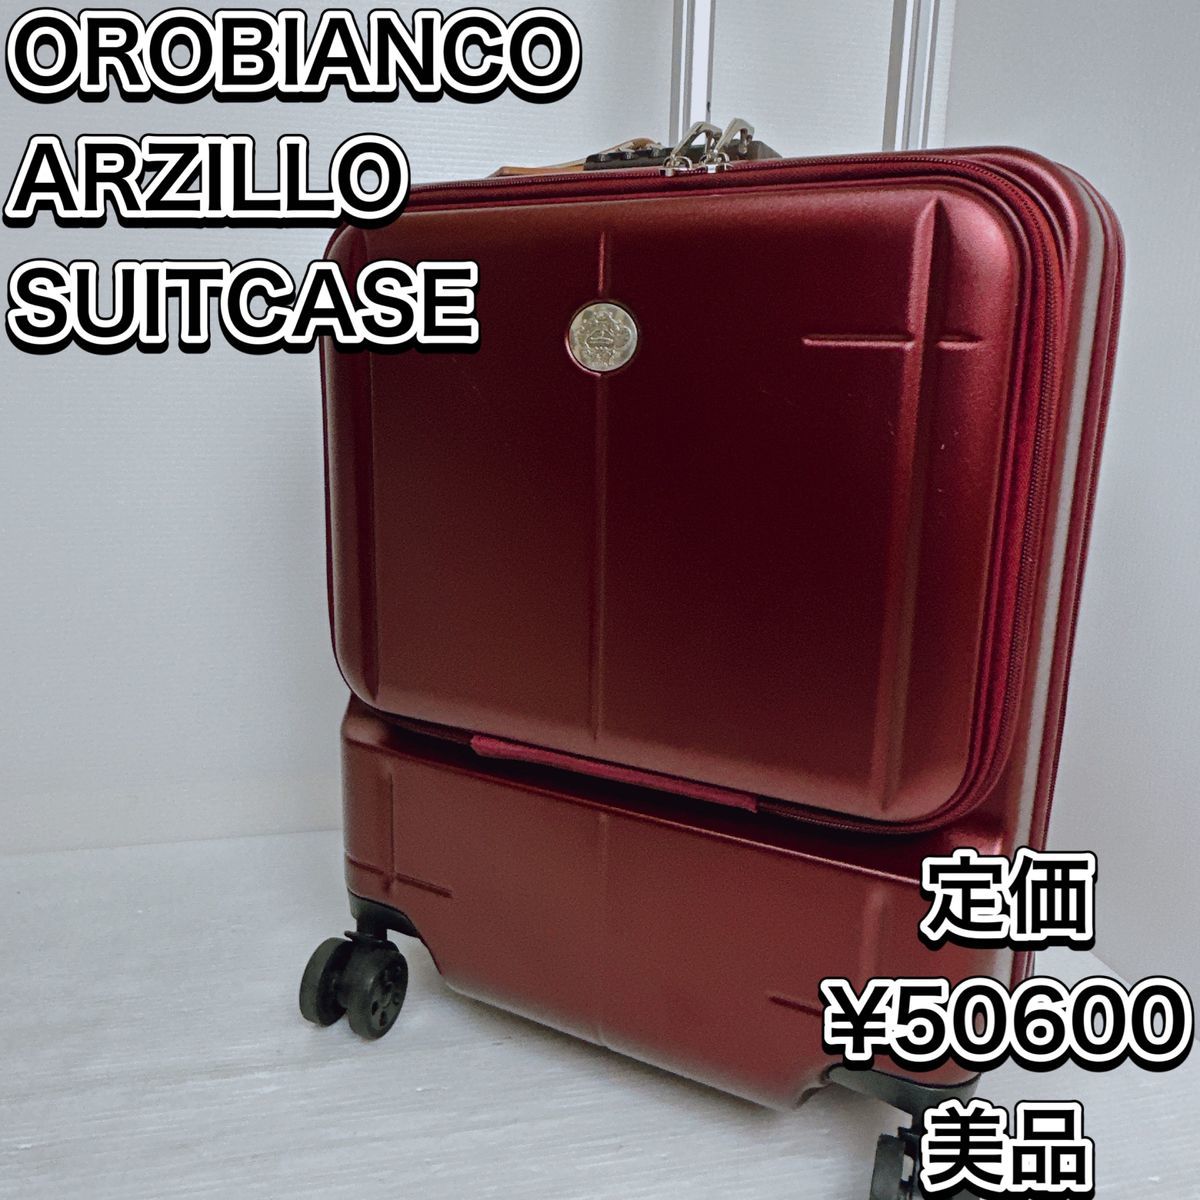 激安単価で 使用少ない 美品 オロビアンコ スーツケース アルジッロ